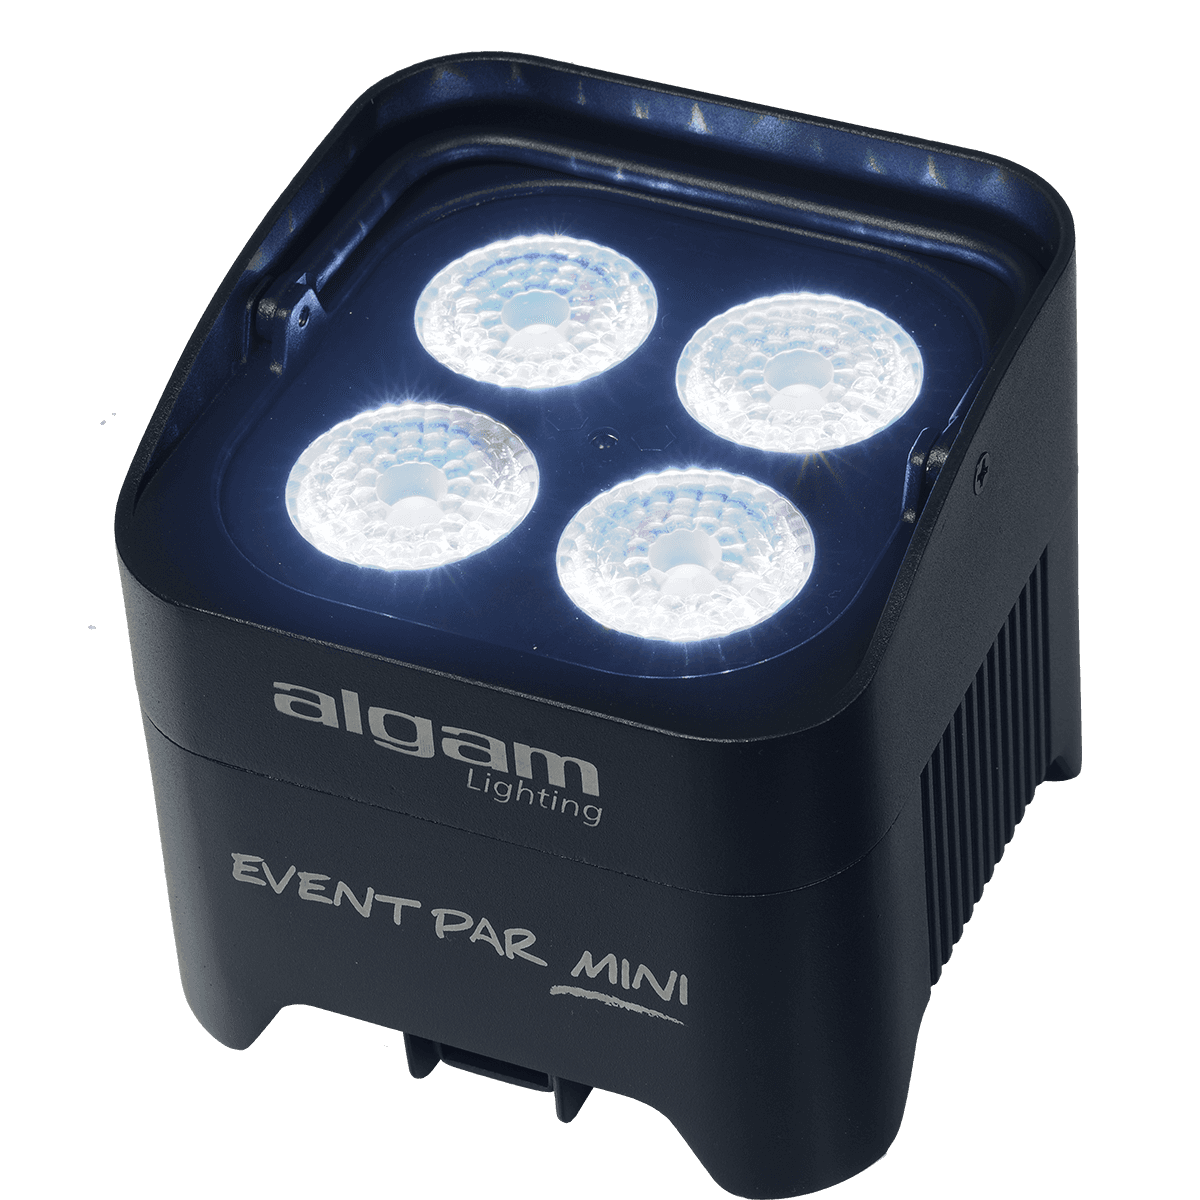 Projecteurs sur batteries - Algam Lighting - EVENTPAR MINI